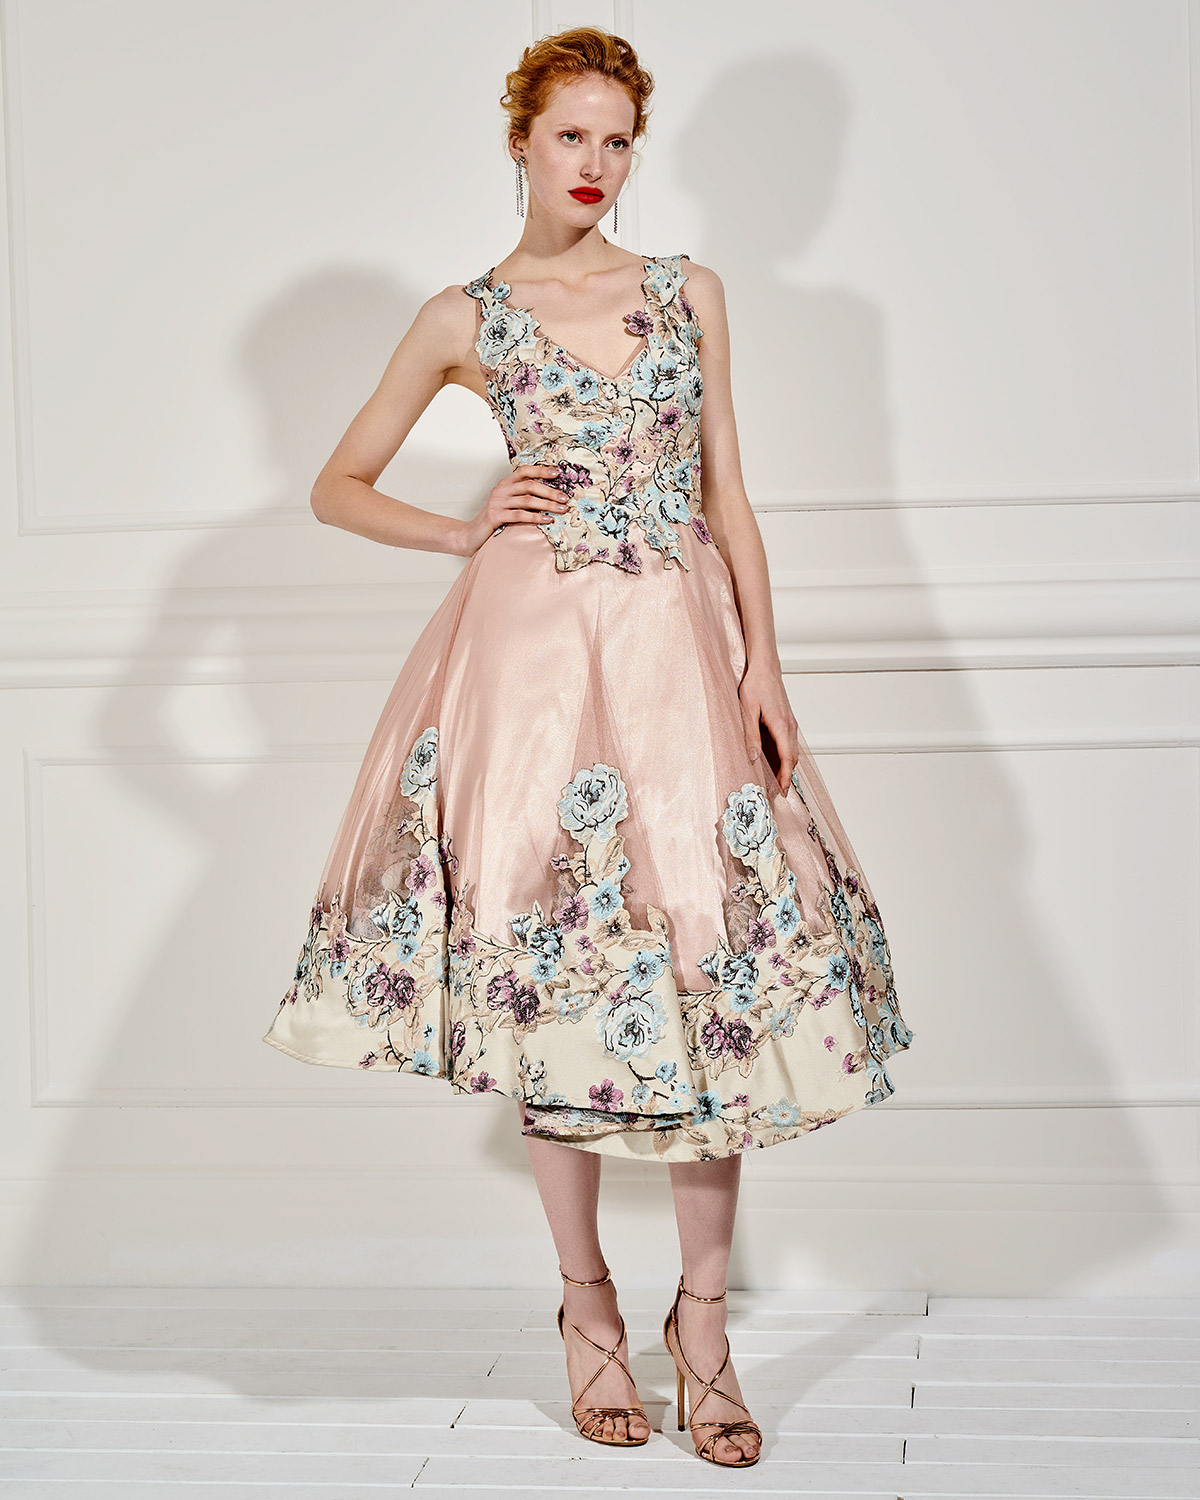 Вечерние платья / Βραδινό μακρύ φόρεμα από τούλι με απλικέ λουλούδια